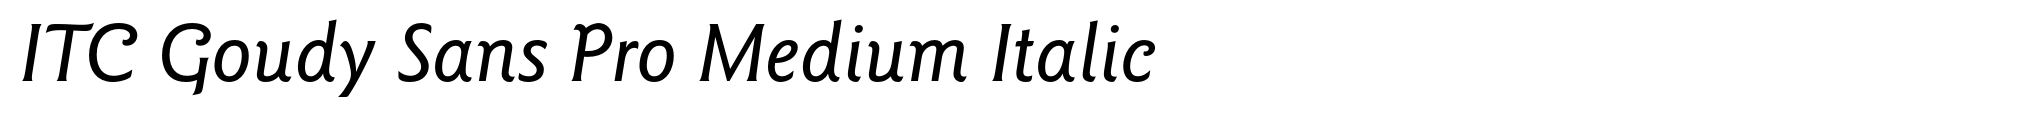 ITC Goudy Sans Pro Medium Italic image